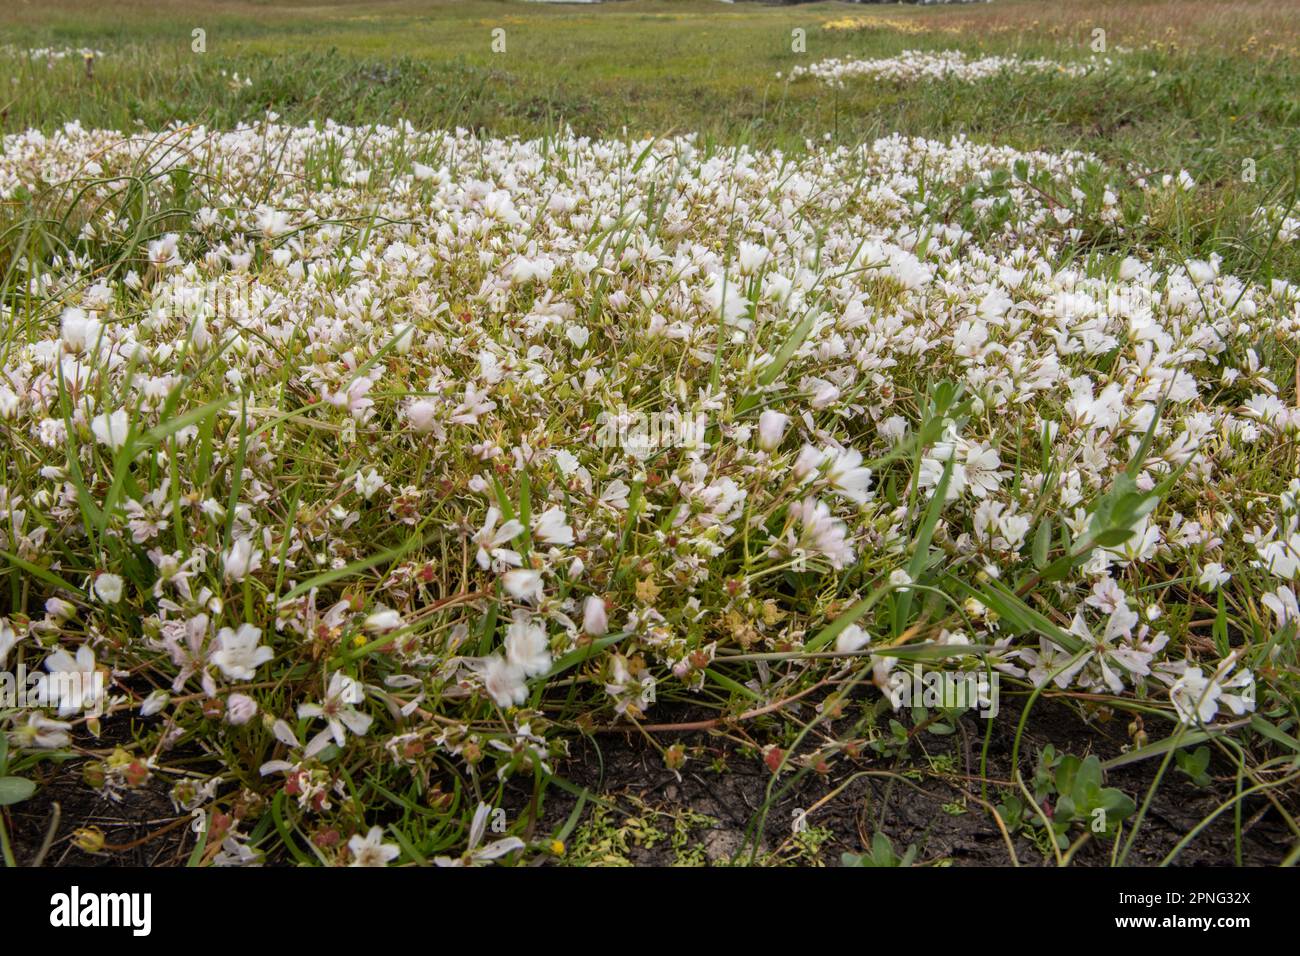 Spezialistin für den Vernal-Pool, die im Central Valley von Kalifornien blüht. Weißer Wiesenschaum (Limnanthes alba), eine einheimische Pflanze blüht. Stockfoto